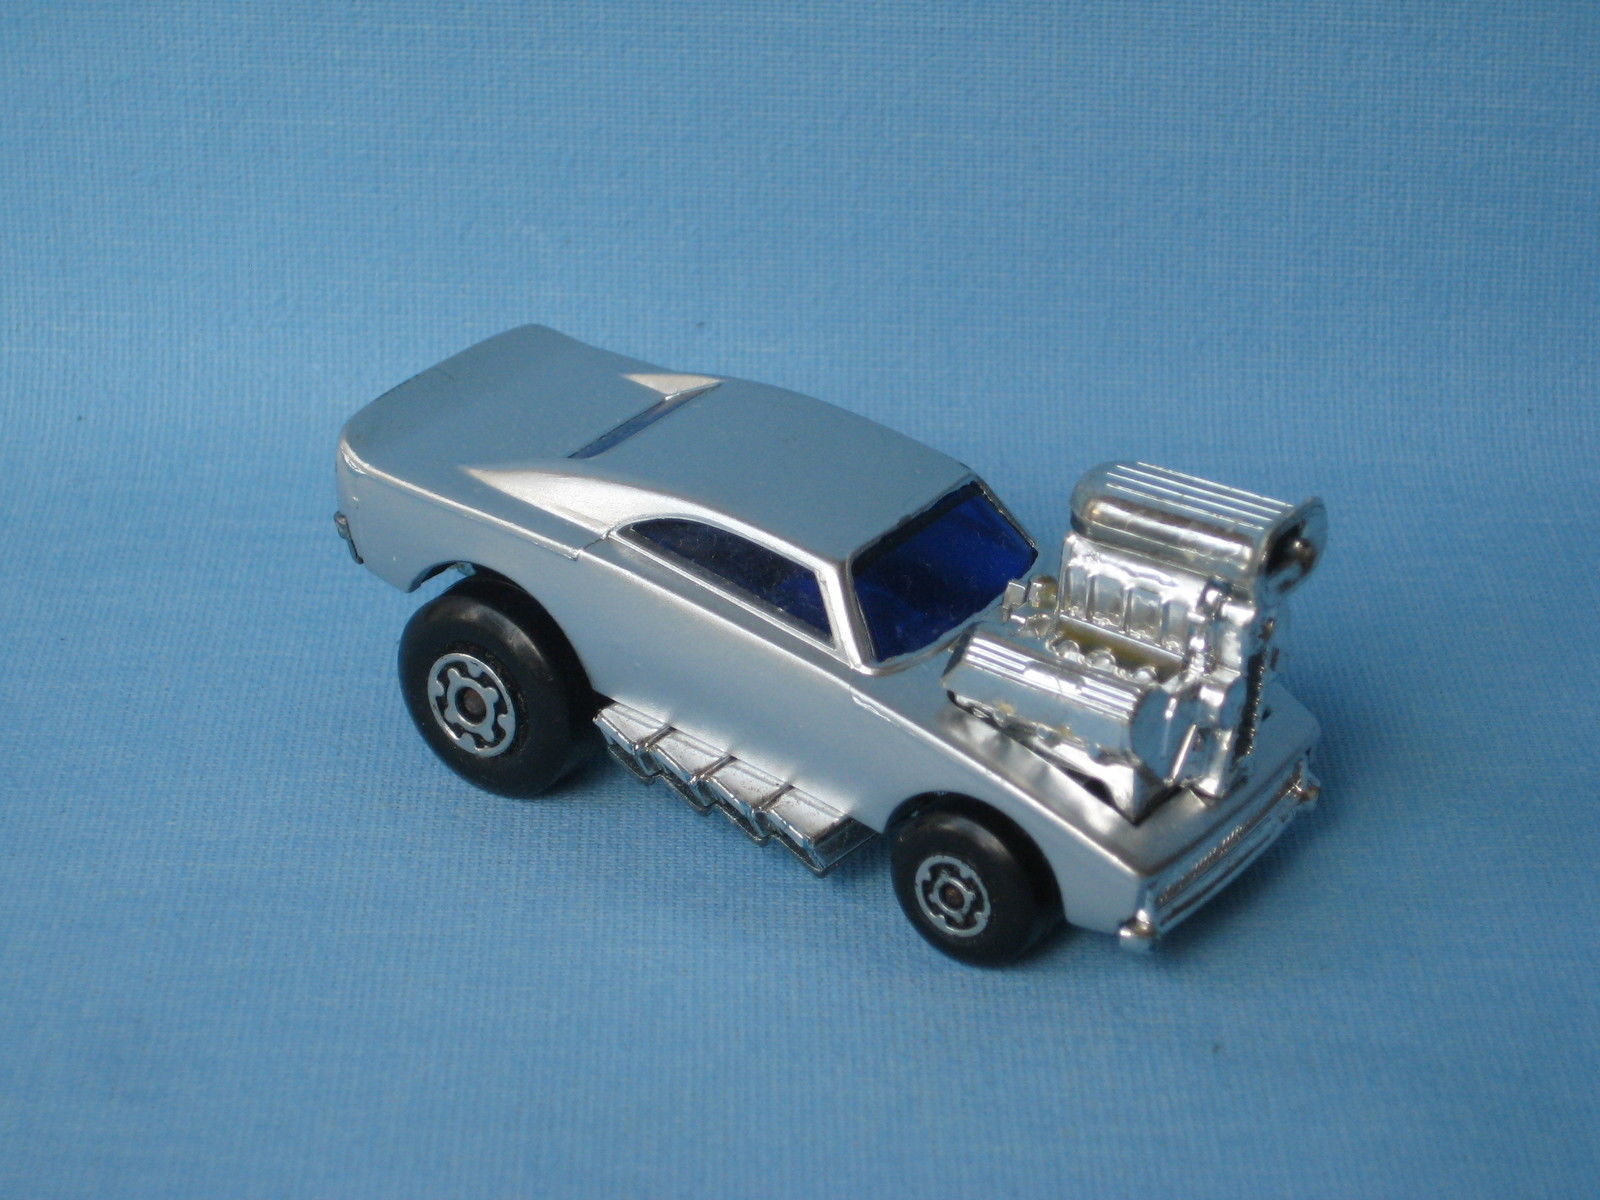 Les voitures miniatures Matchbox : Un Top 5 des modèles les plus chers !